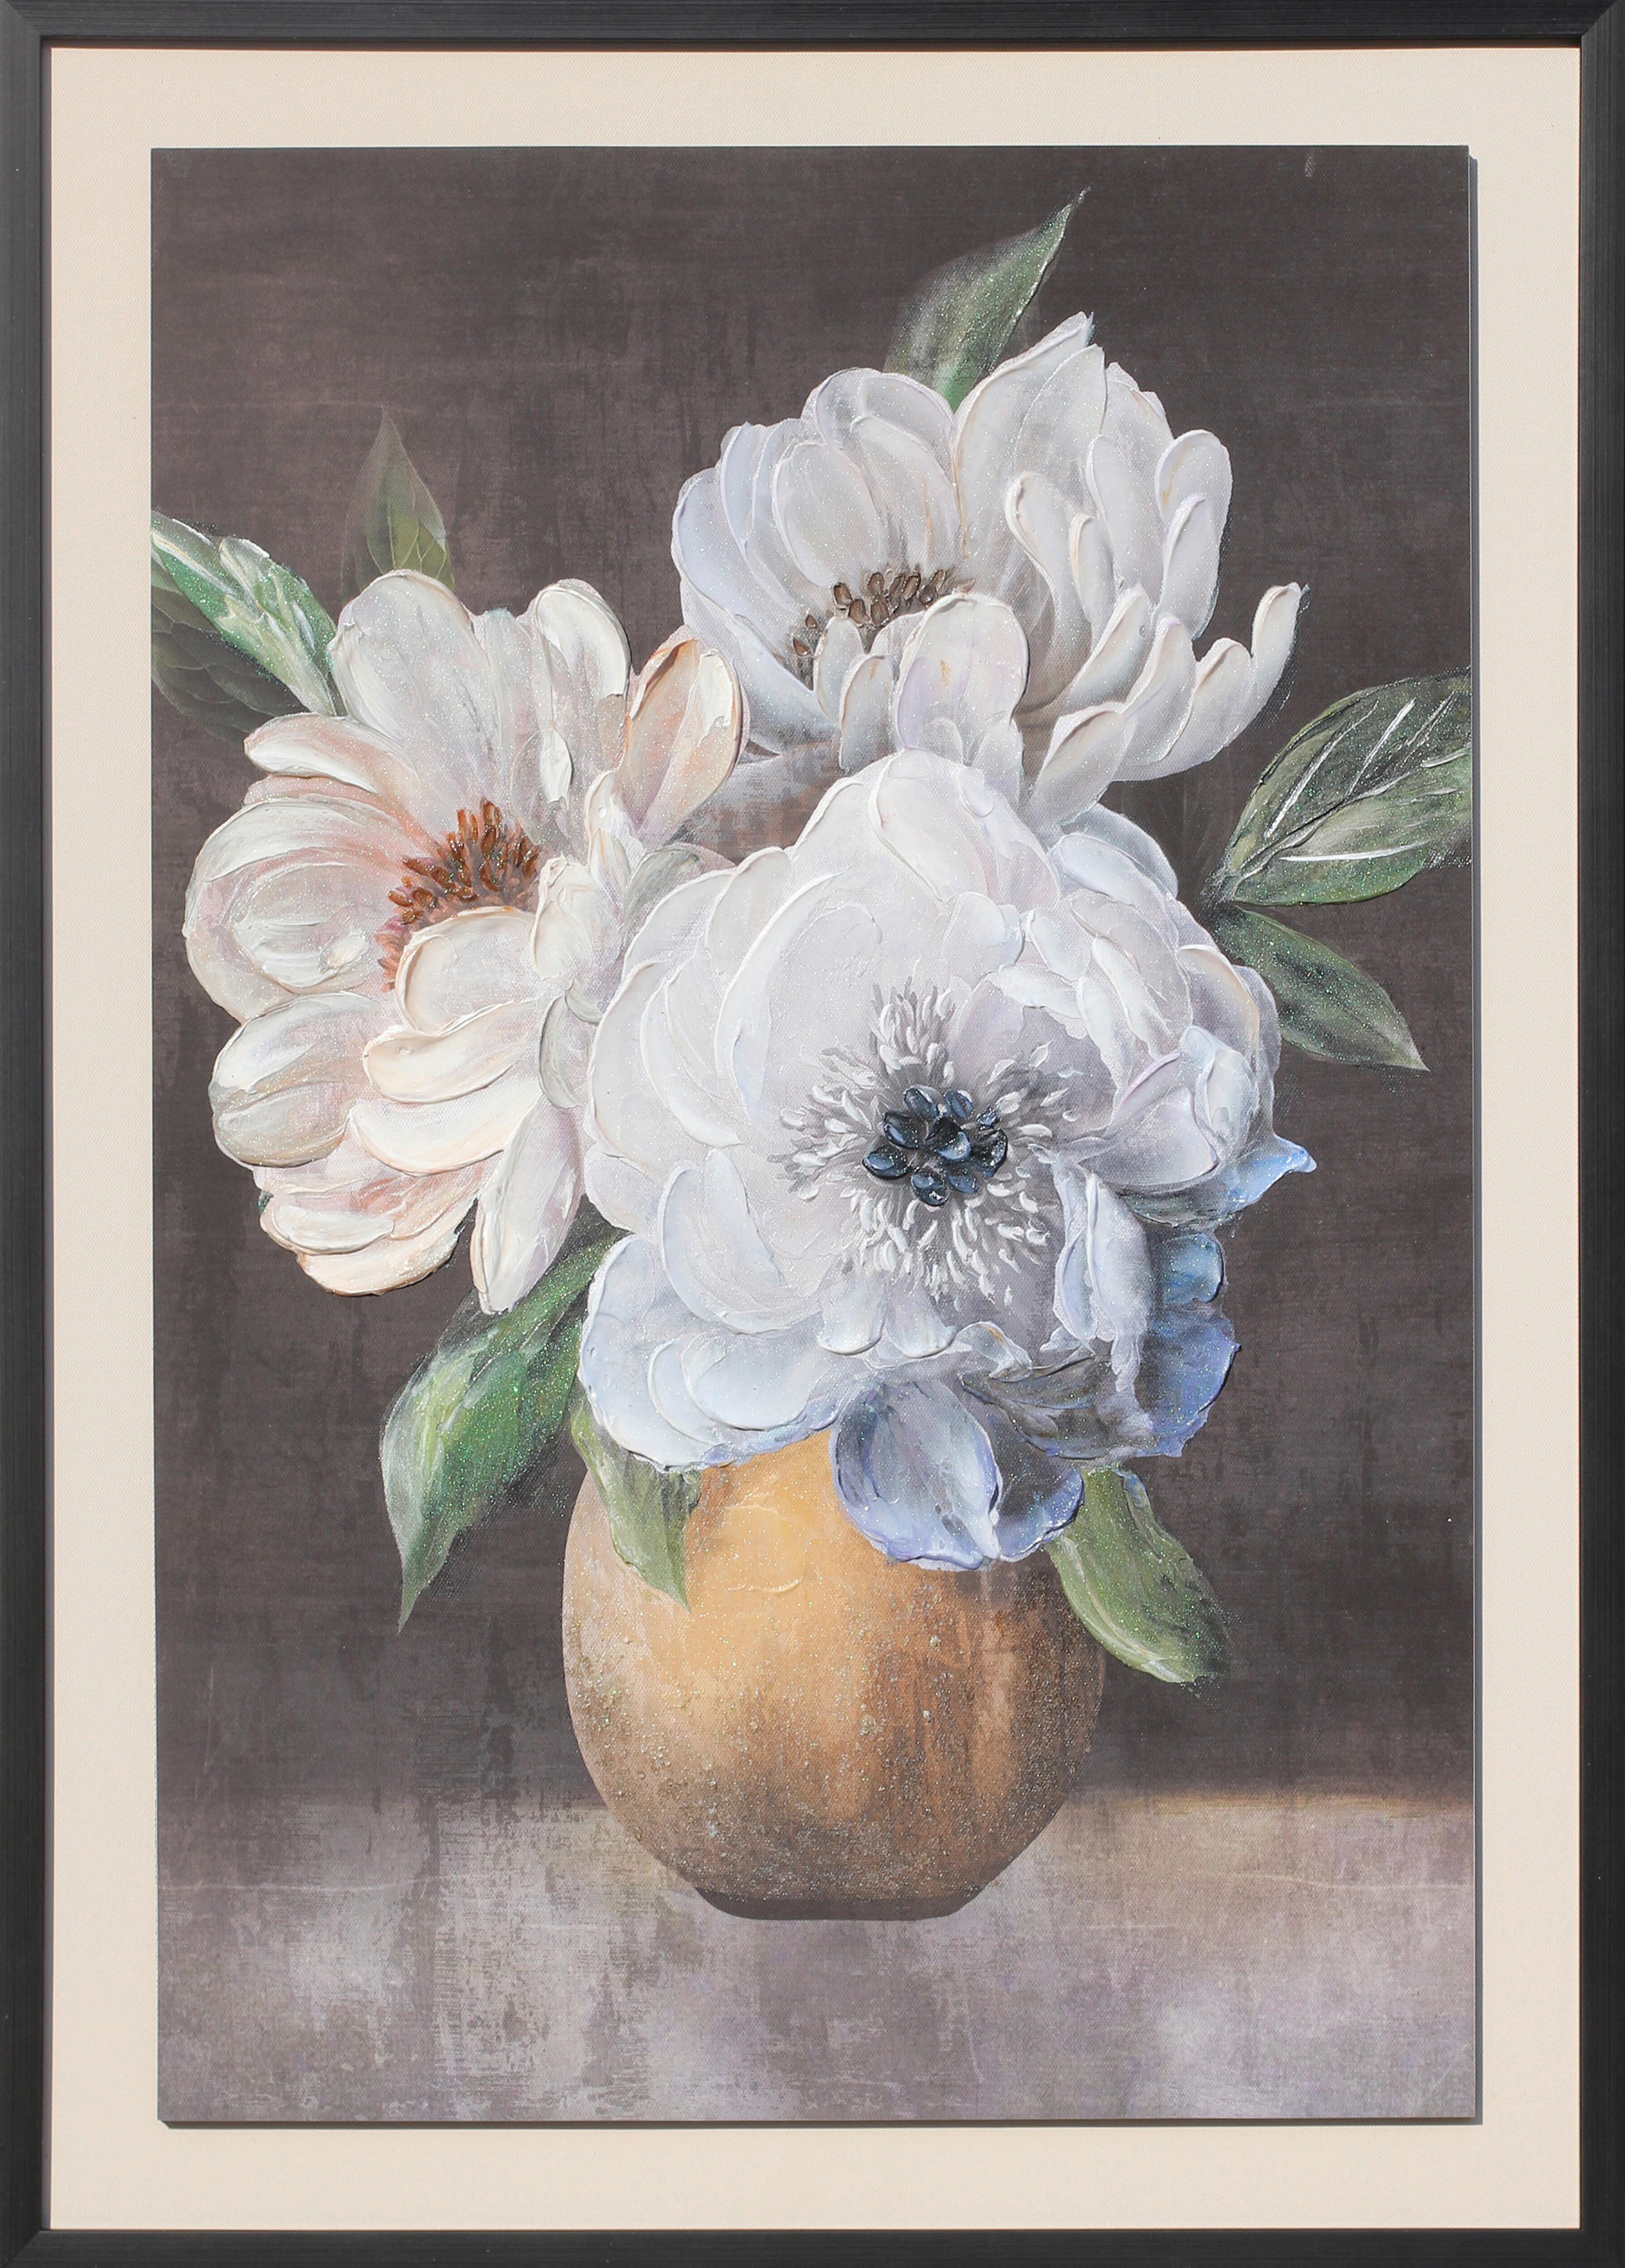 Monee TIŠTĚNÉ OBRAZY NA PLÁTNĚ, květiny, 50/70 cm